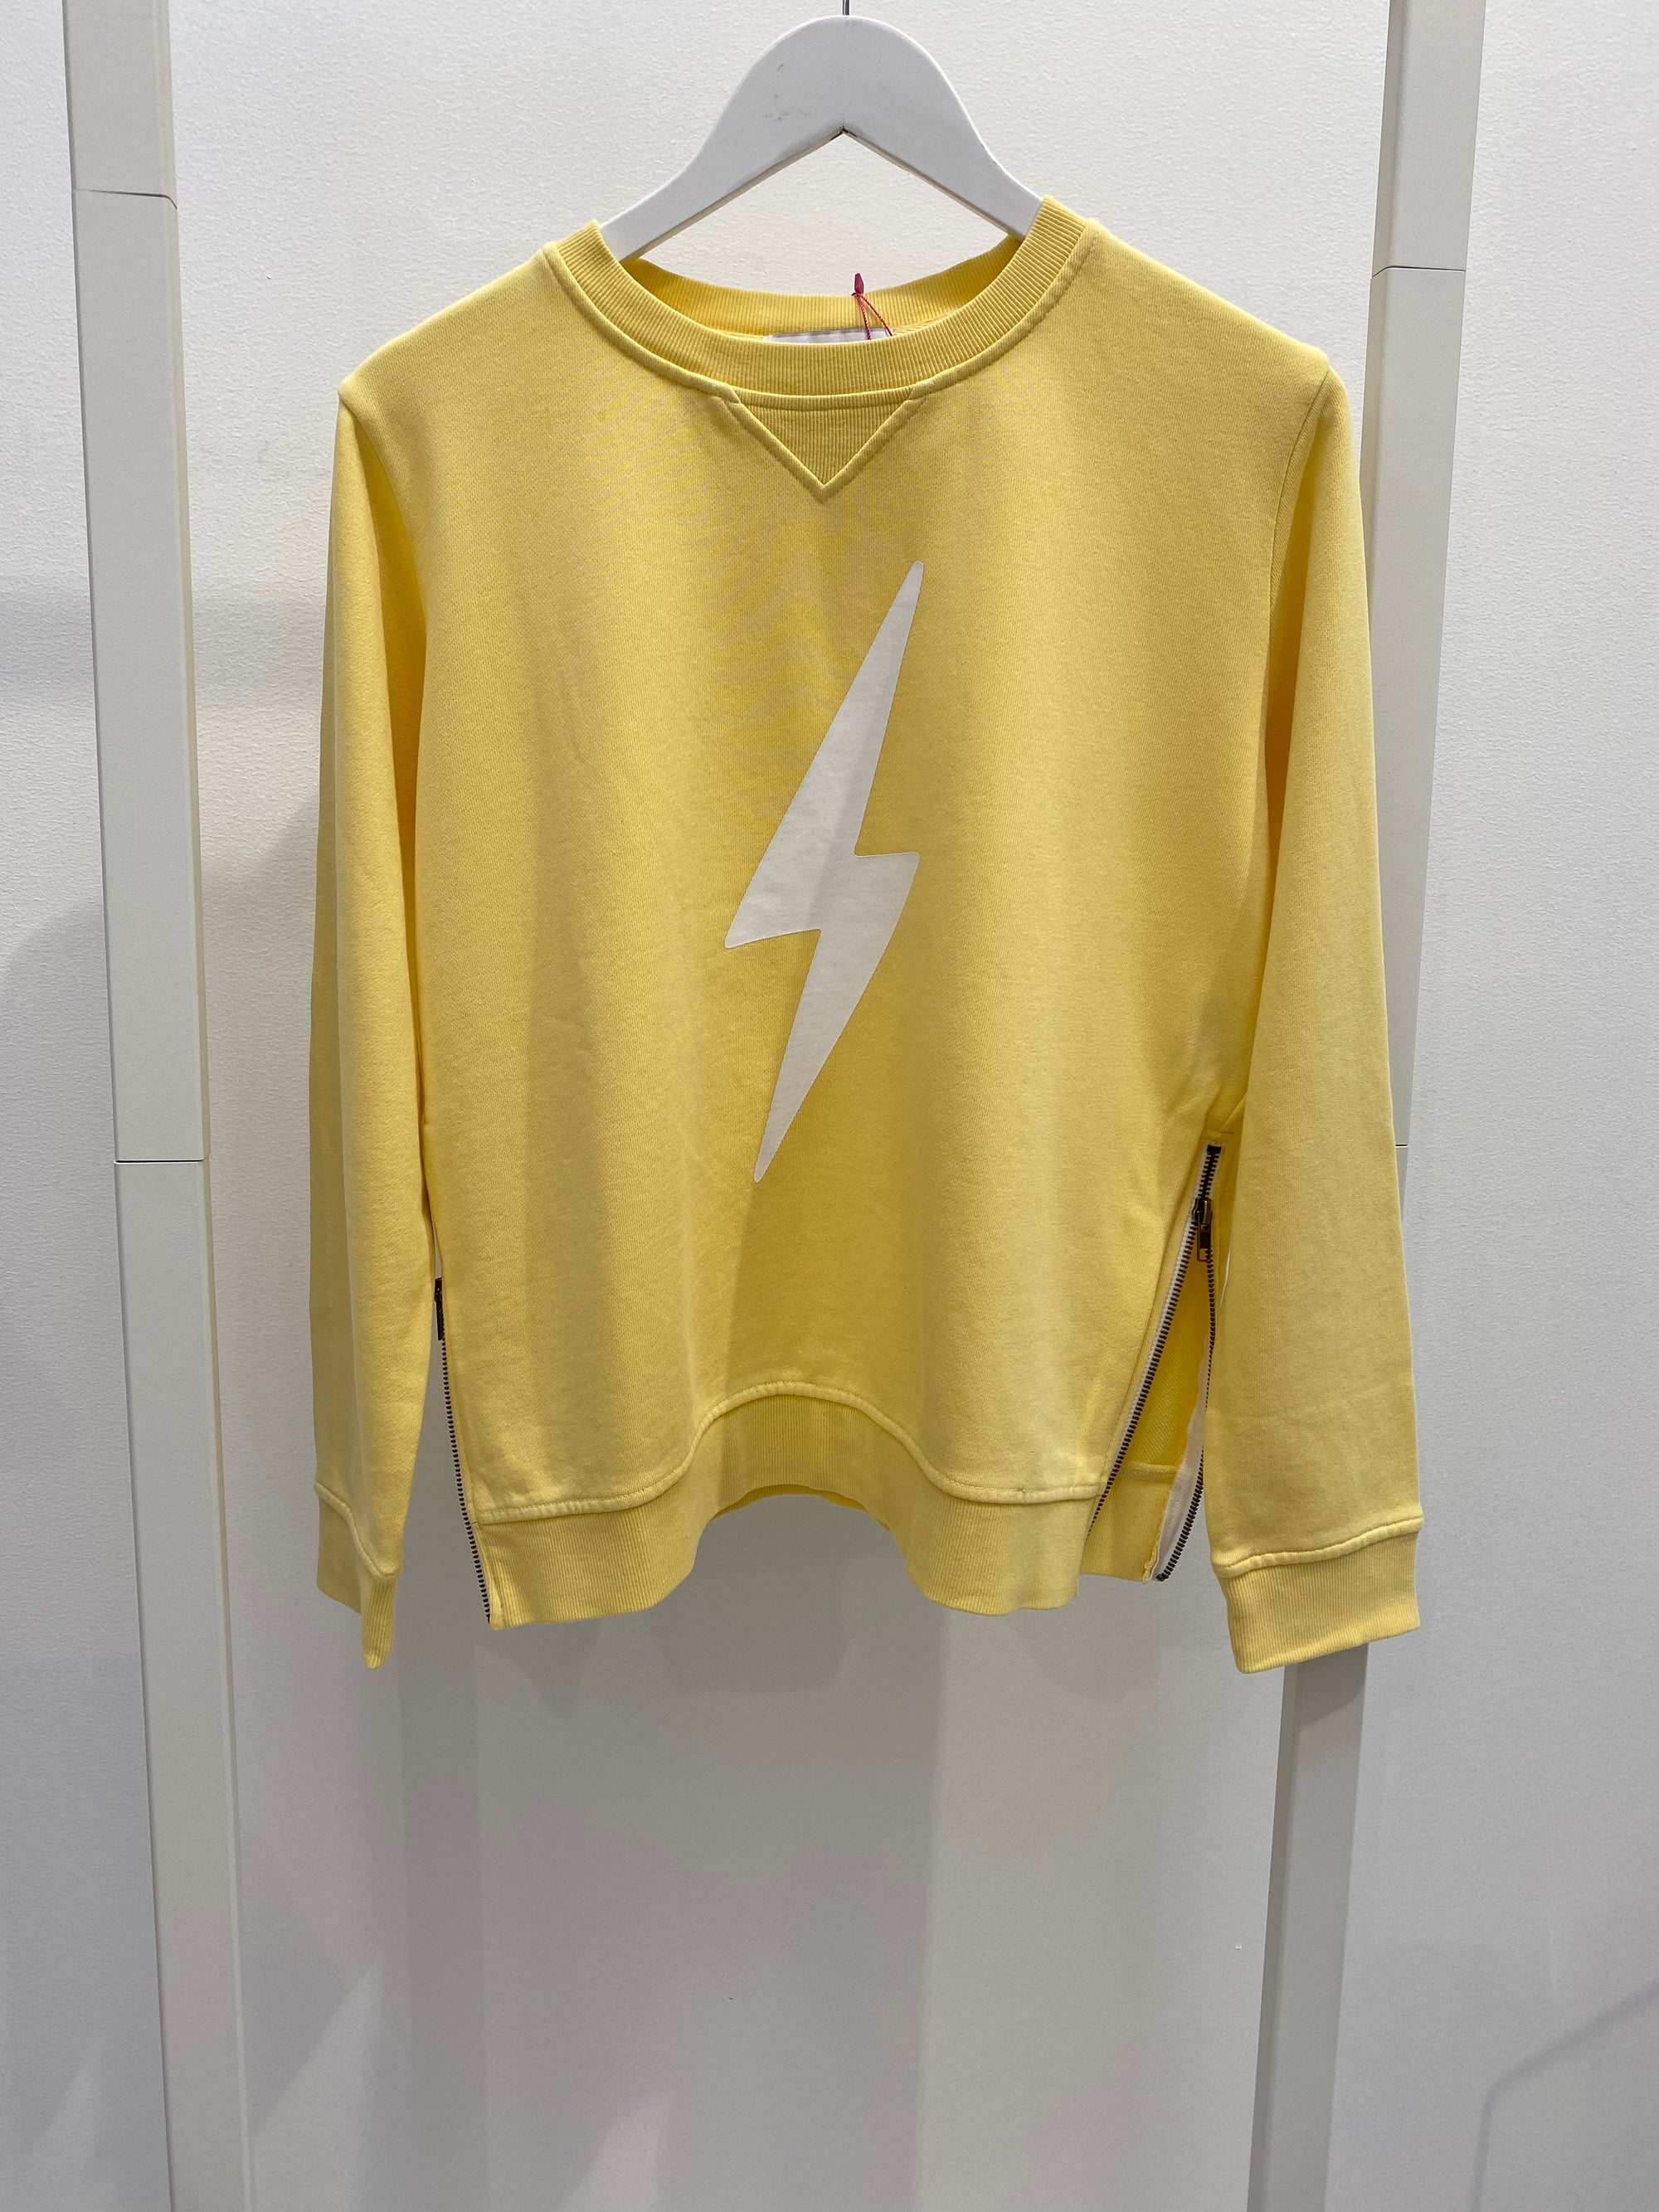 Lightning Bolt Zip Sweatshirt – Yellow & White